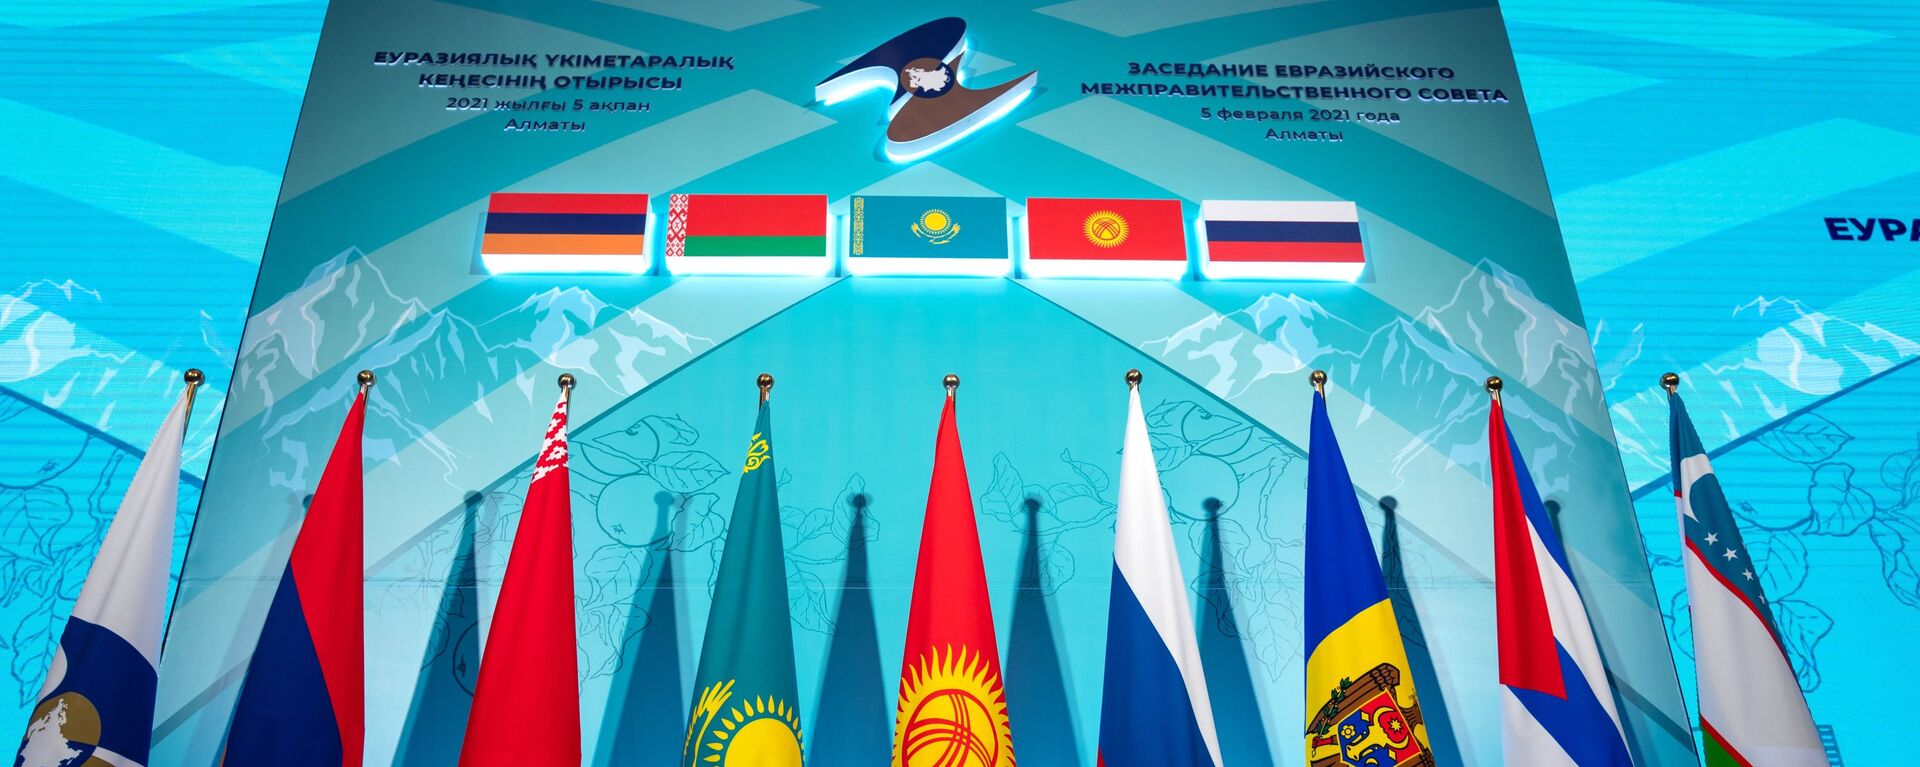 Заседание Евразийского межправительственного совета стран ЕАЭС - Sputnik Азербайджан, 1920, 21.04.2021